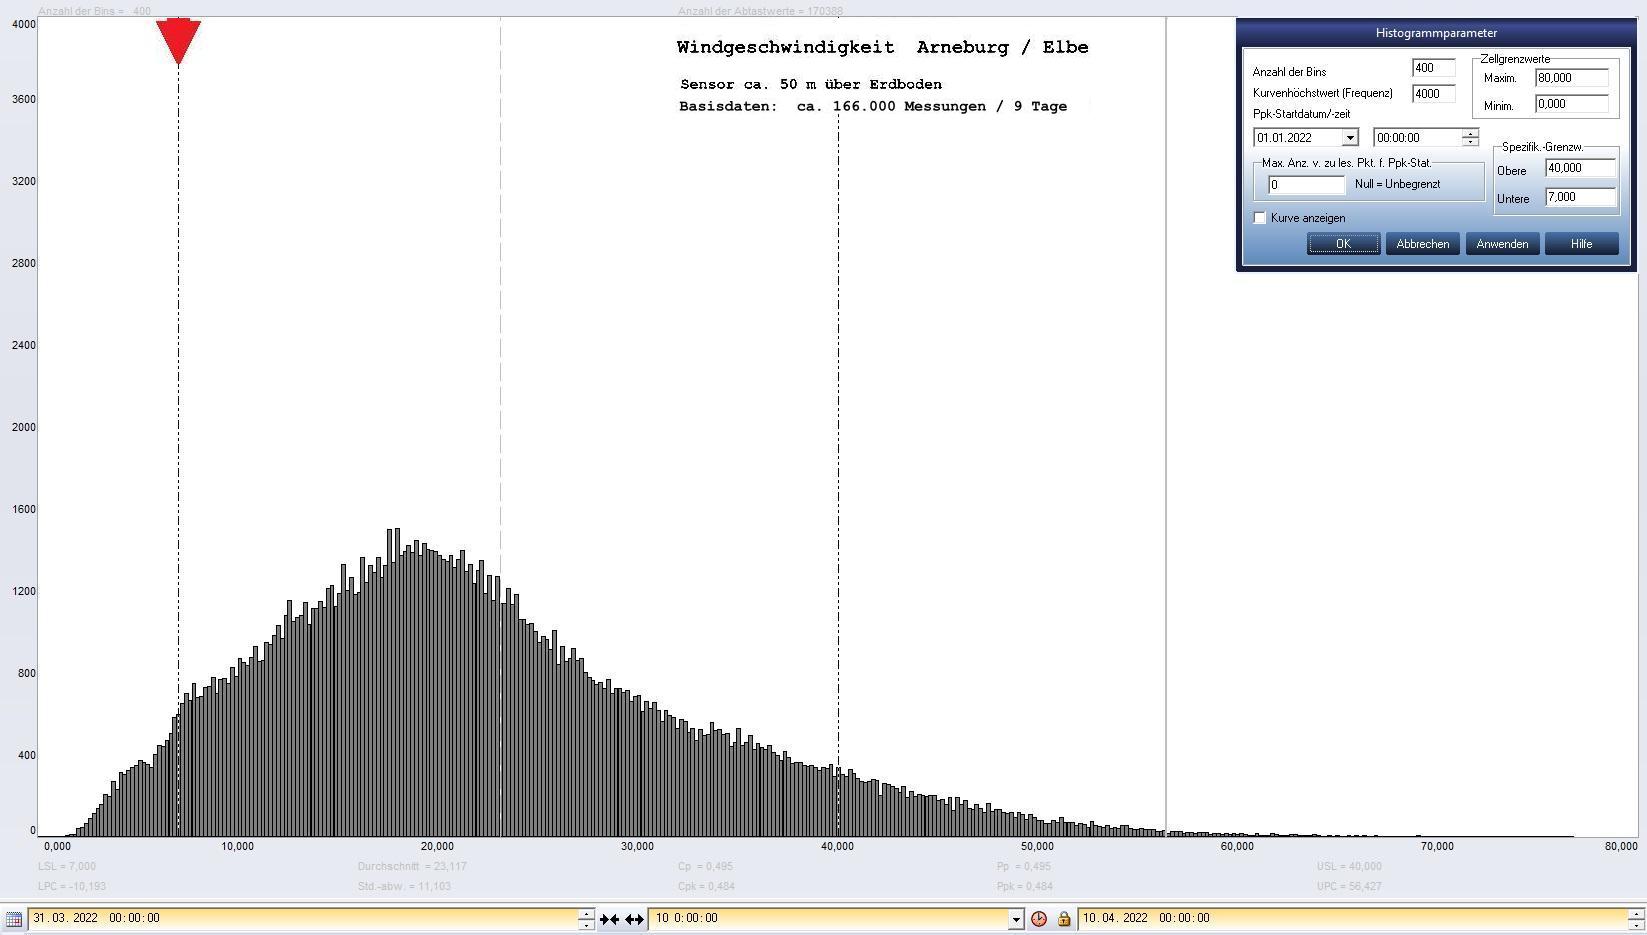 Arneburg 9 Tage Histogramm Winddaten, ab 31.03.2022 
  Sensor auf Gebäude, ca. 50 m über Erdboden, Basis: 5s-Aufzeichnung